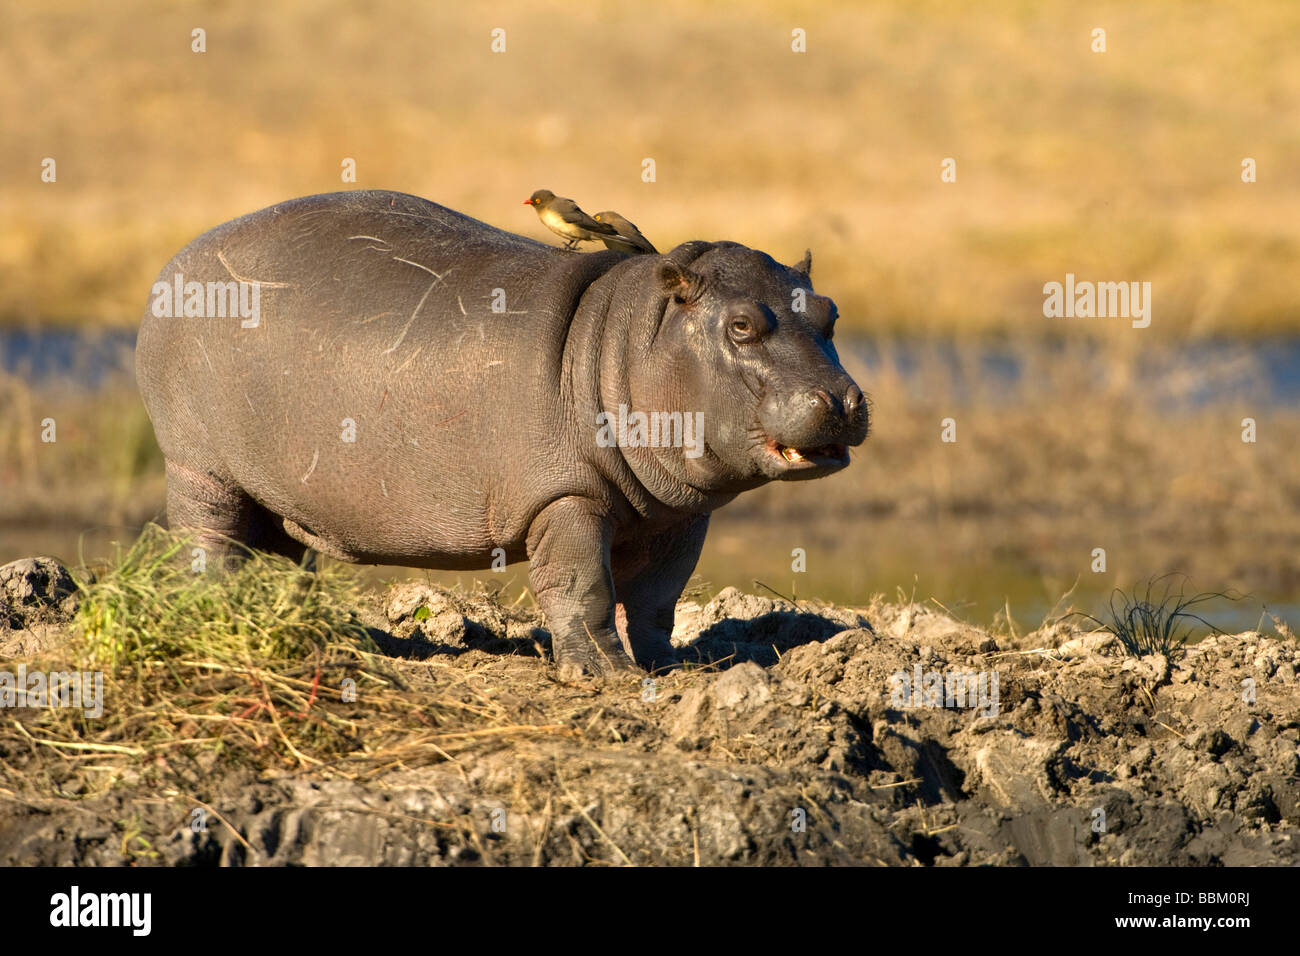 Hippo (Hippopotamus amphibius), young animal, Chobe National Park, Botswana, Africa Stock Photo